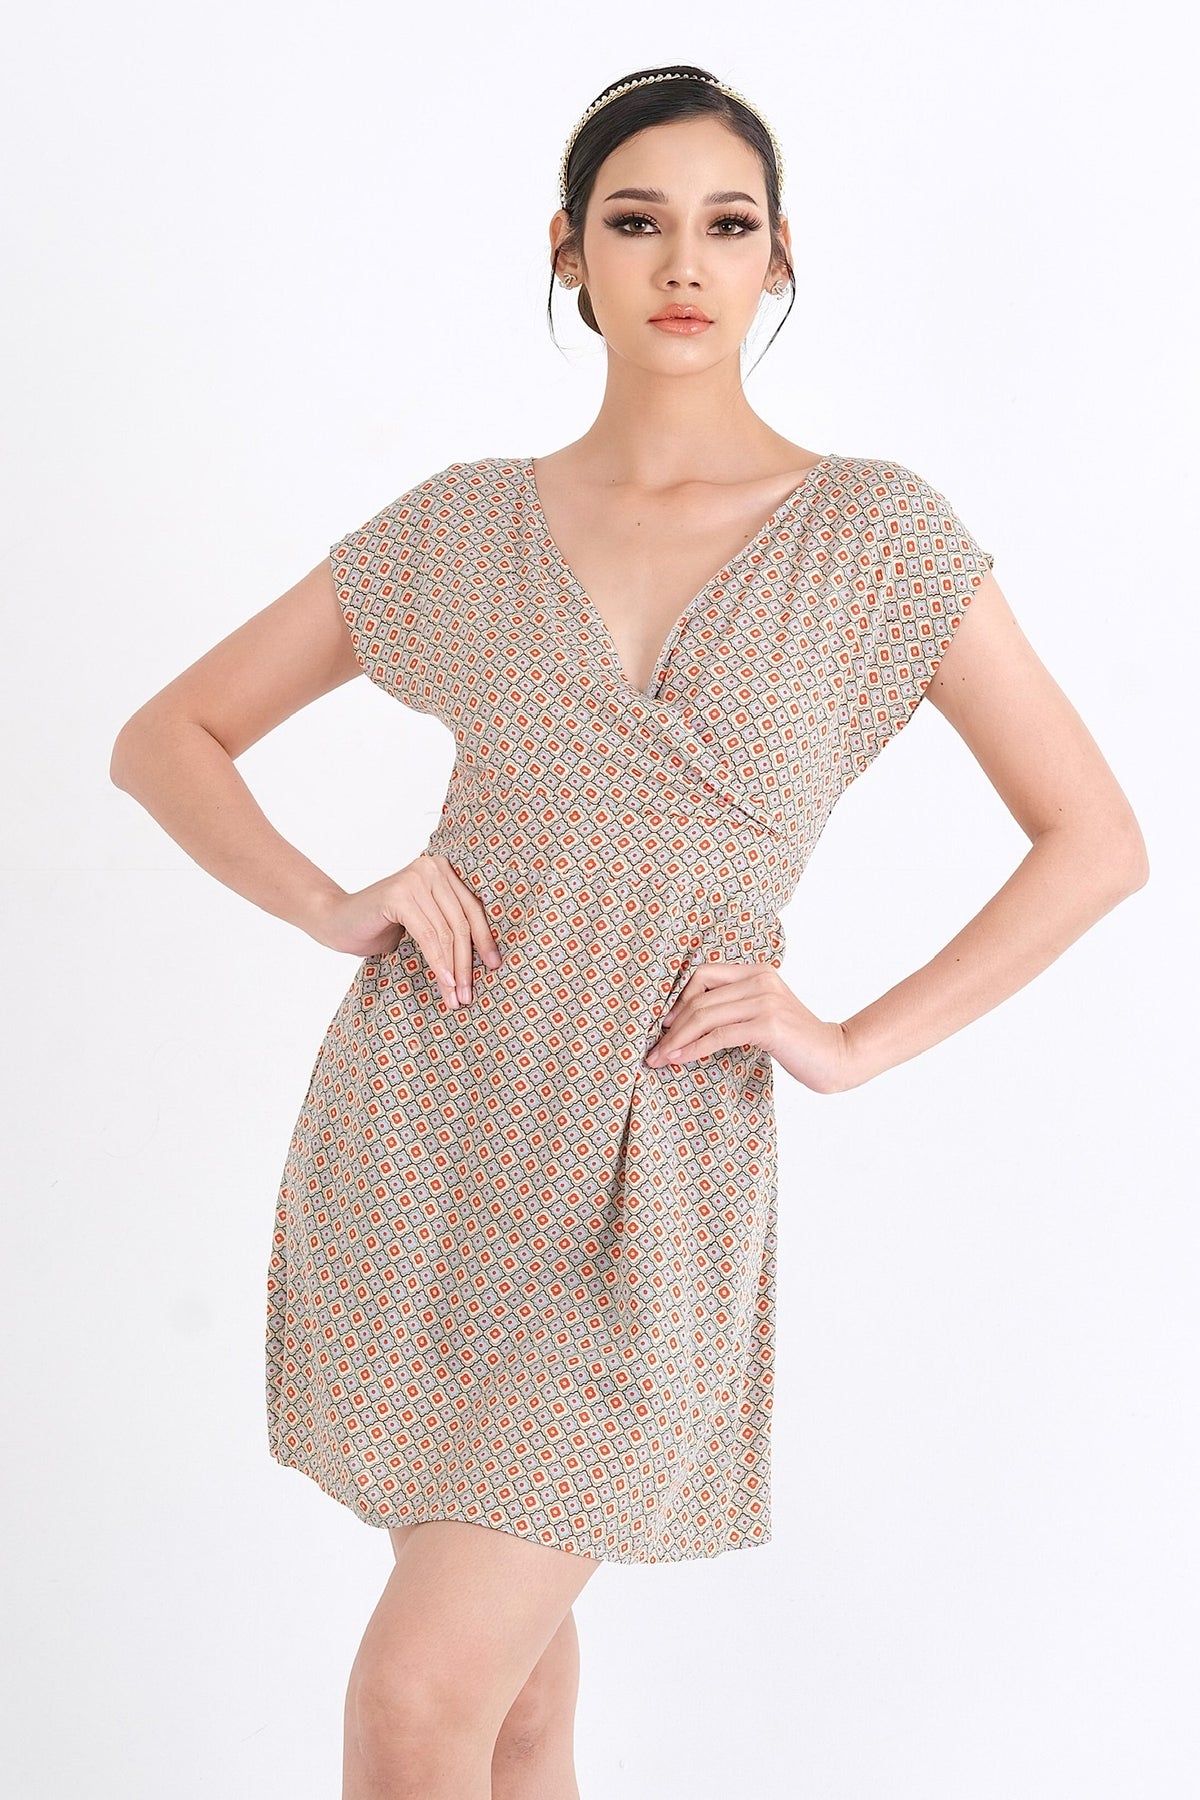 Explorez le style moderne de cette robe en viscose soyeuse et confortable. Idéale pour l'été, cette pièce est disponible en ligne pour les femmes élégantes du Québec, du XS au XXL.